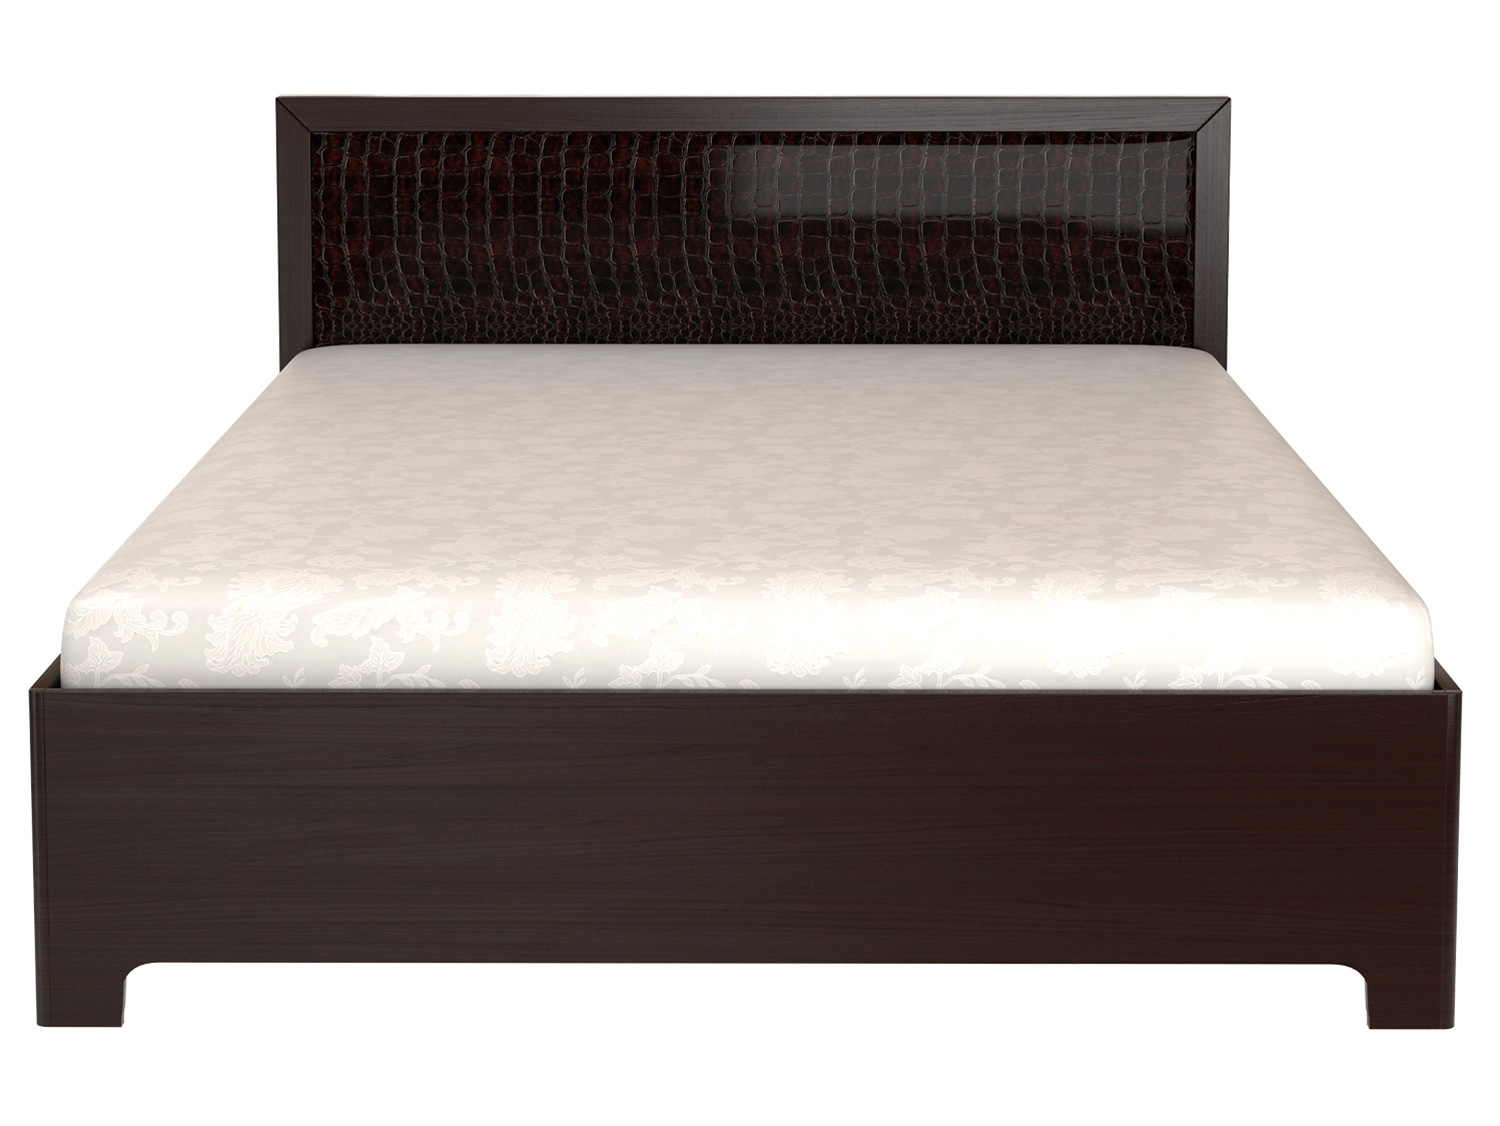 Двуспальная кровать КУРАЖ Кровать Парма 1 / Кровать с подъемным механизмом Парма 1